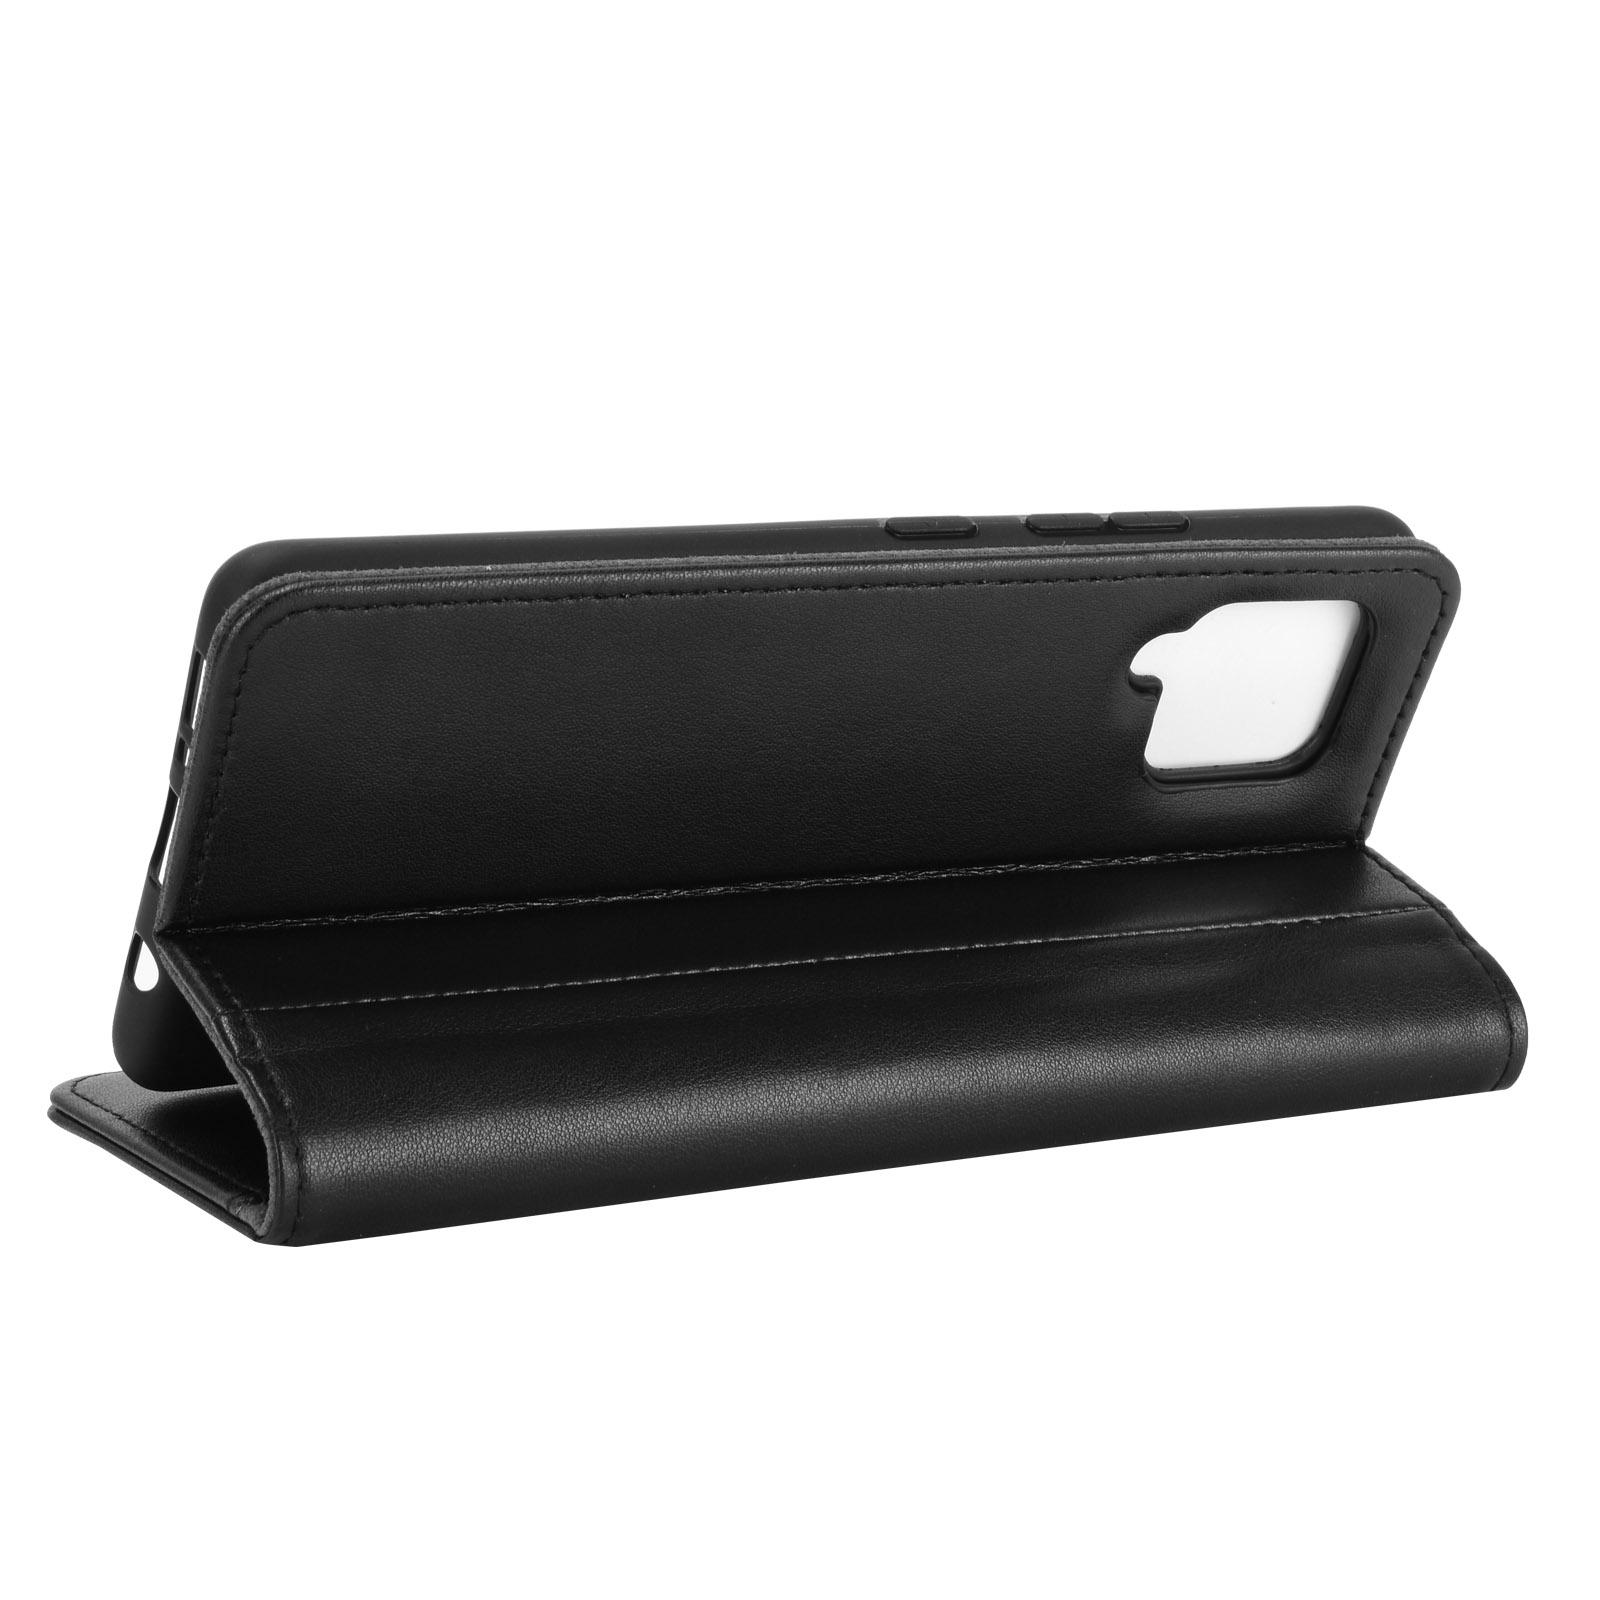 Samsung Galaxy A12 Plånboksfodral i Äkta Läder, svart